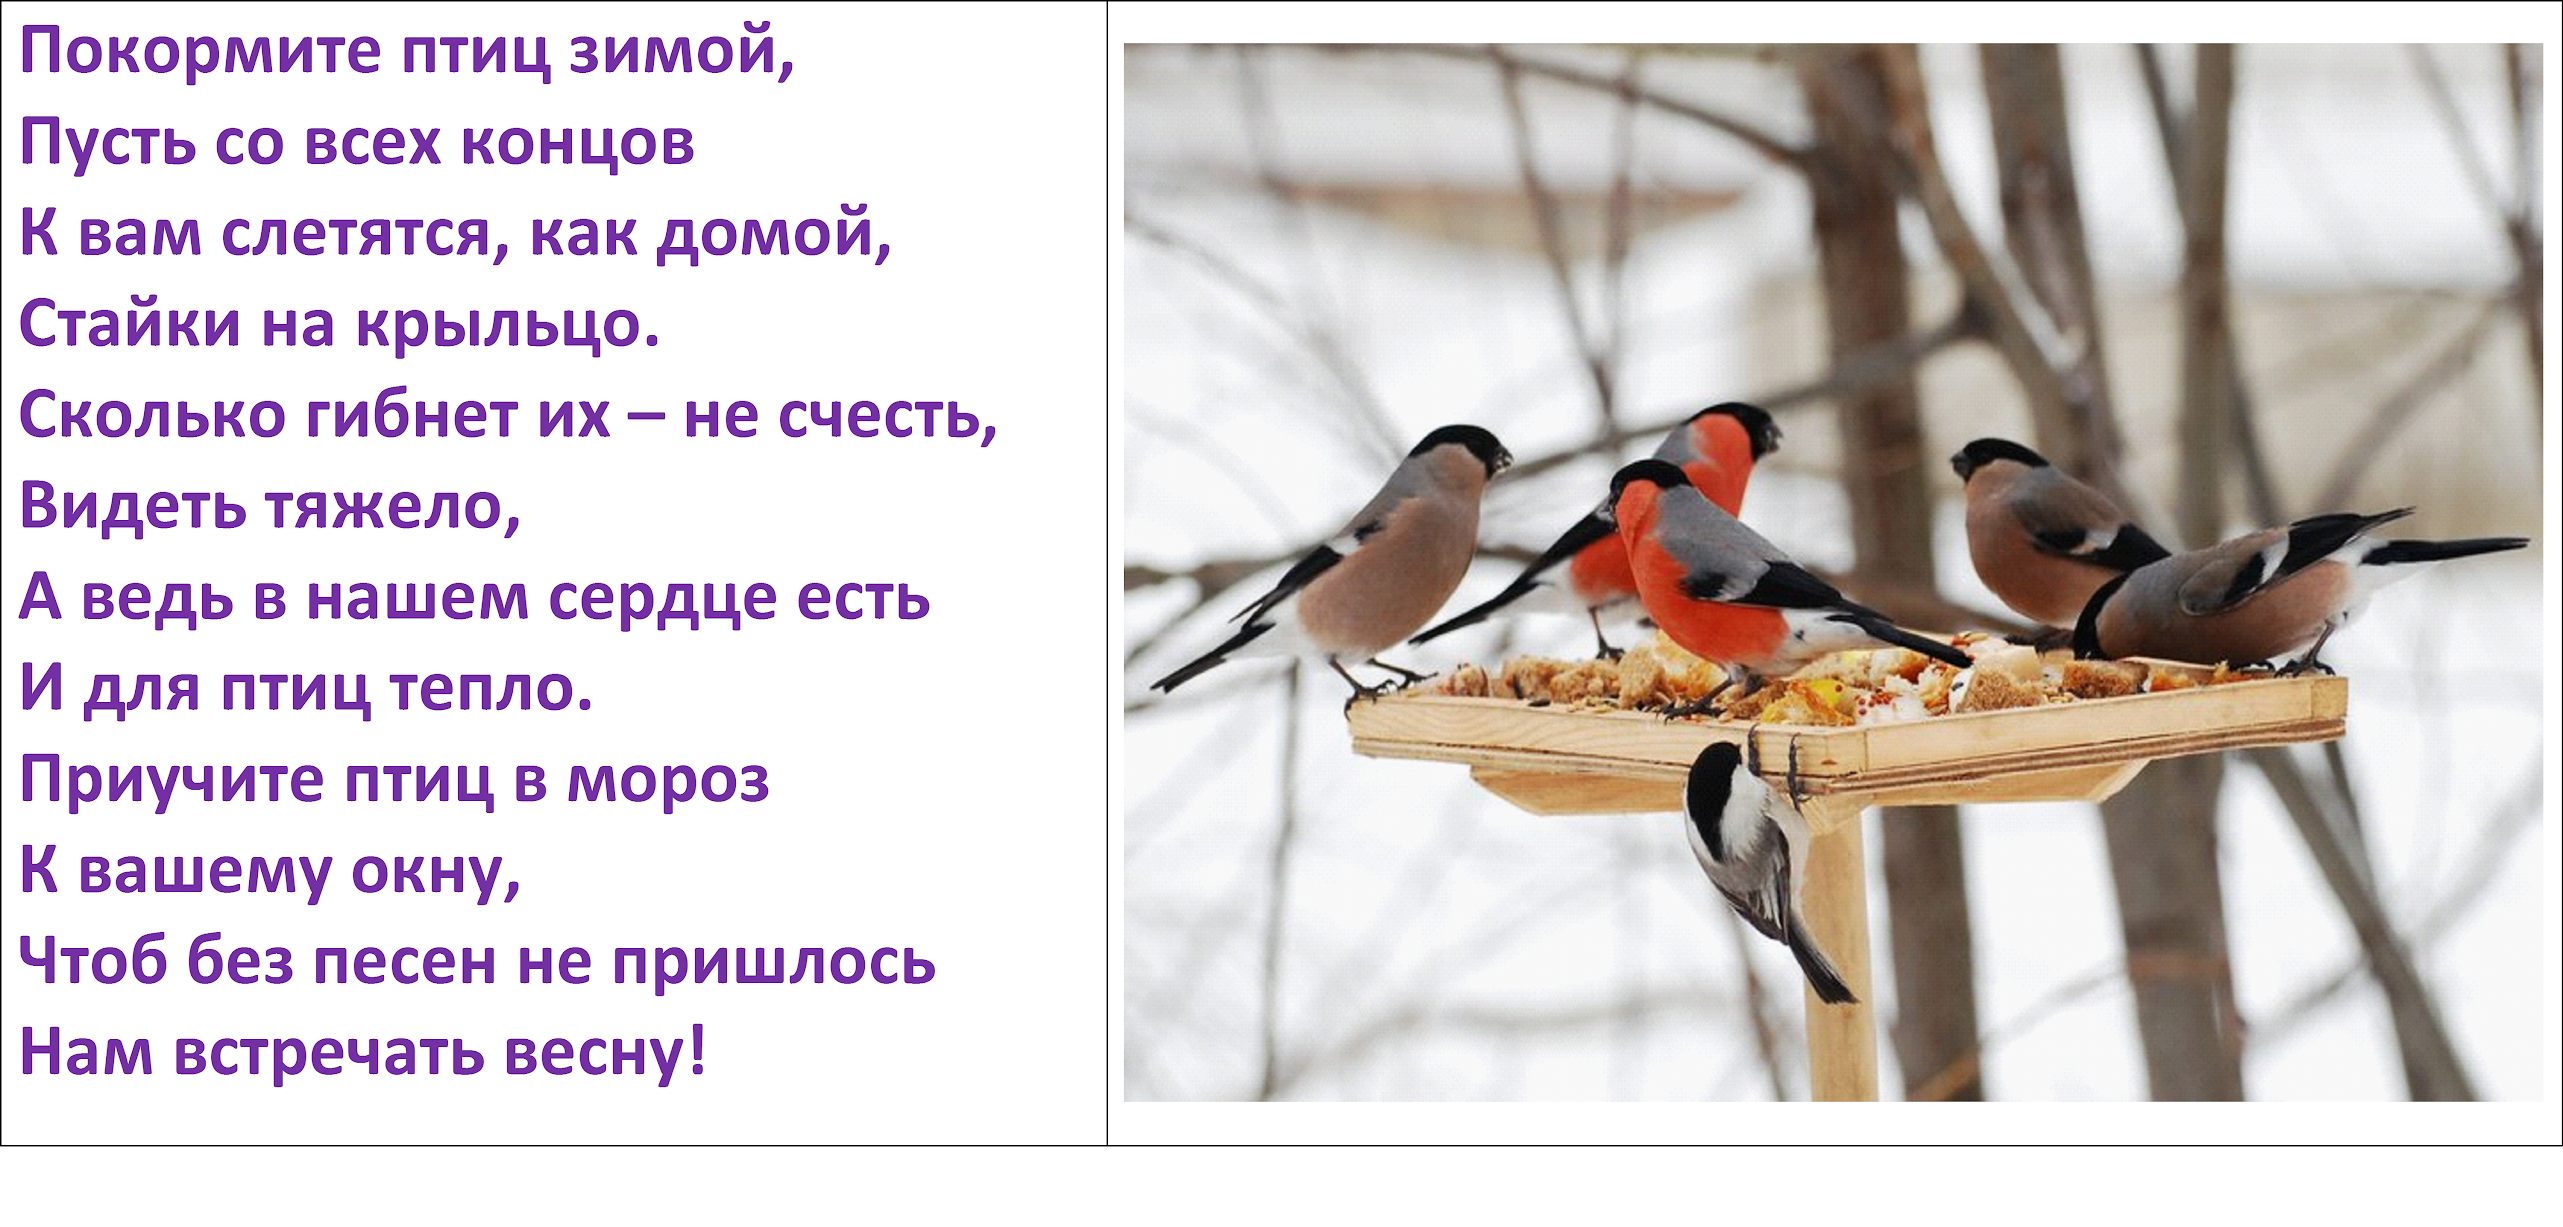 Стихотворения птицы зимой. Покормите птиц зимой. Покормите птиц зимой стихотворение. Стих Покормите птиц зимой. Накорми зимующих птиц.